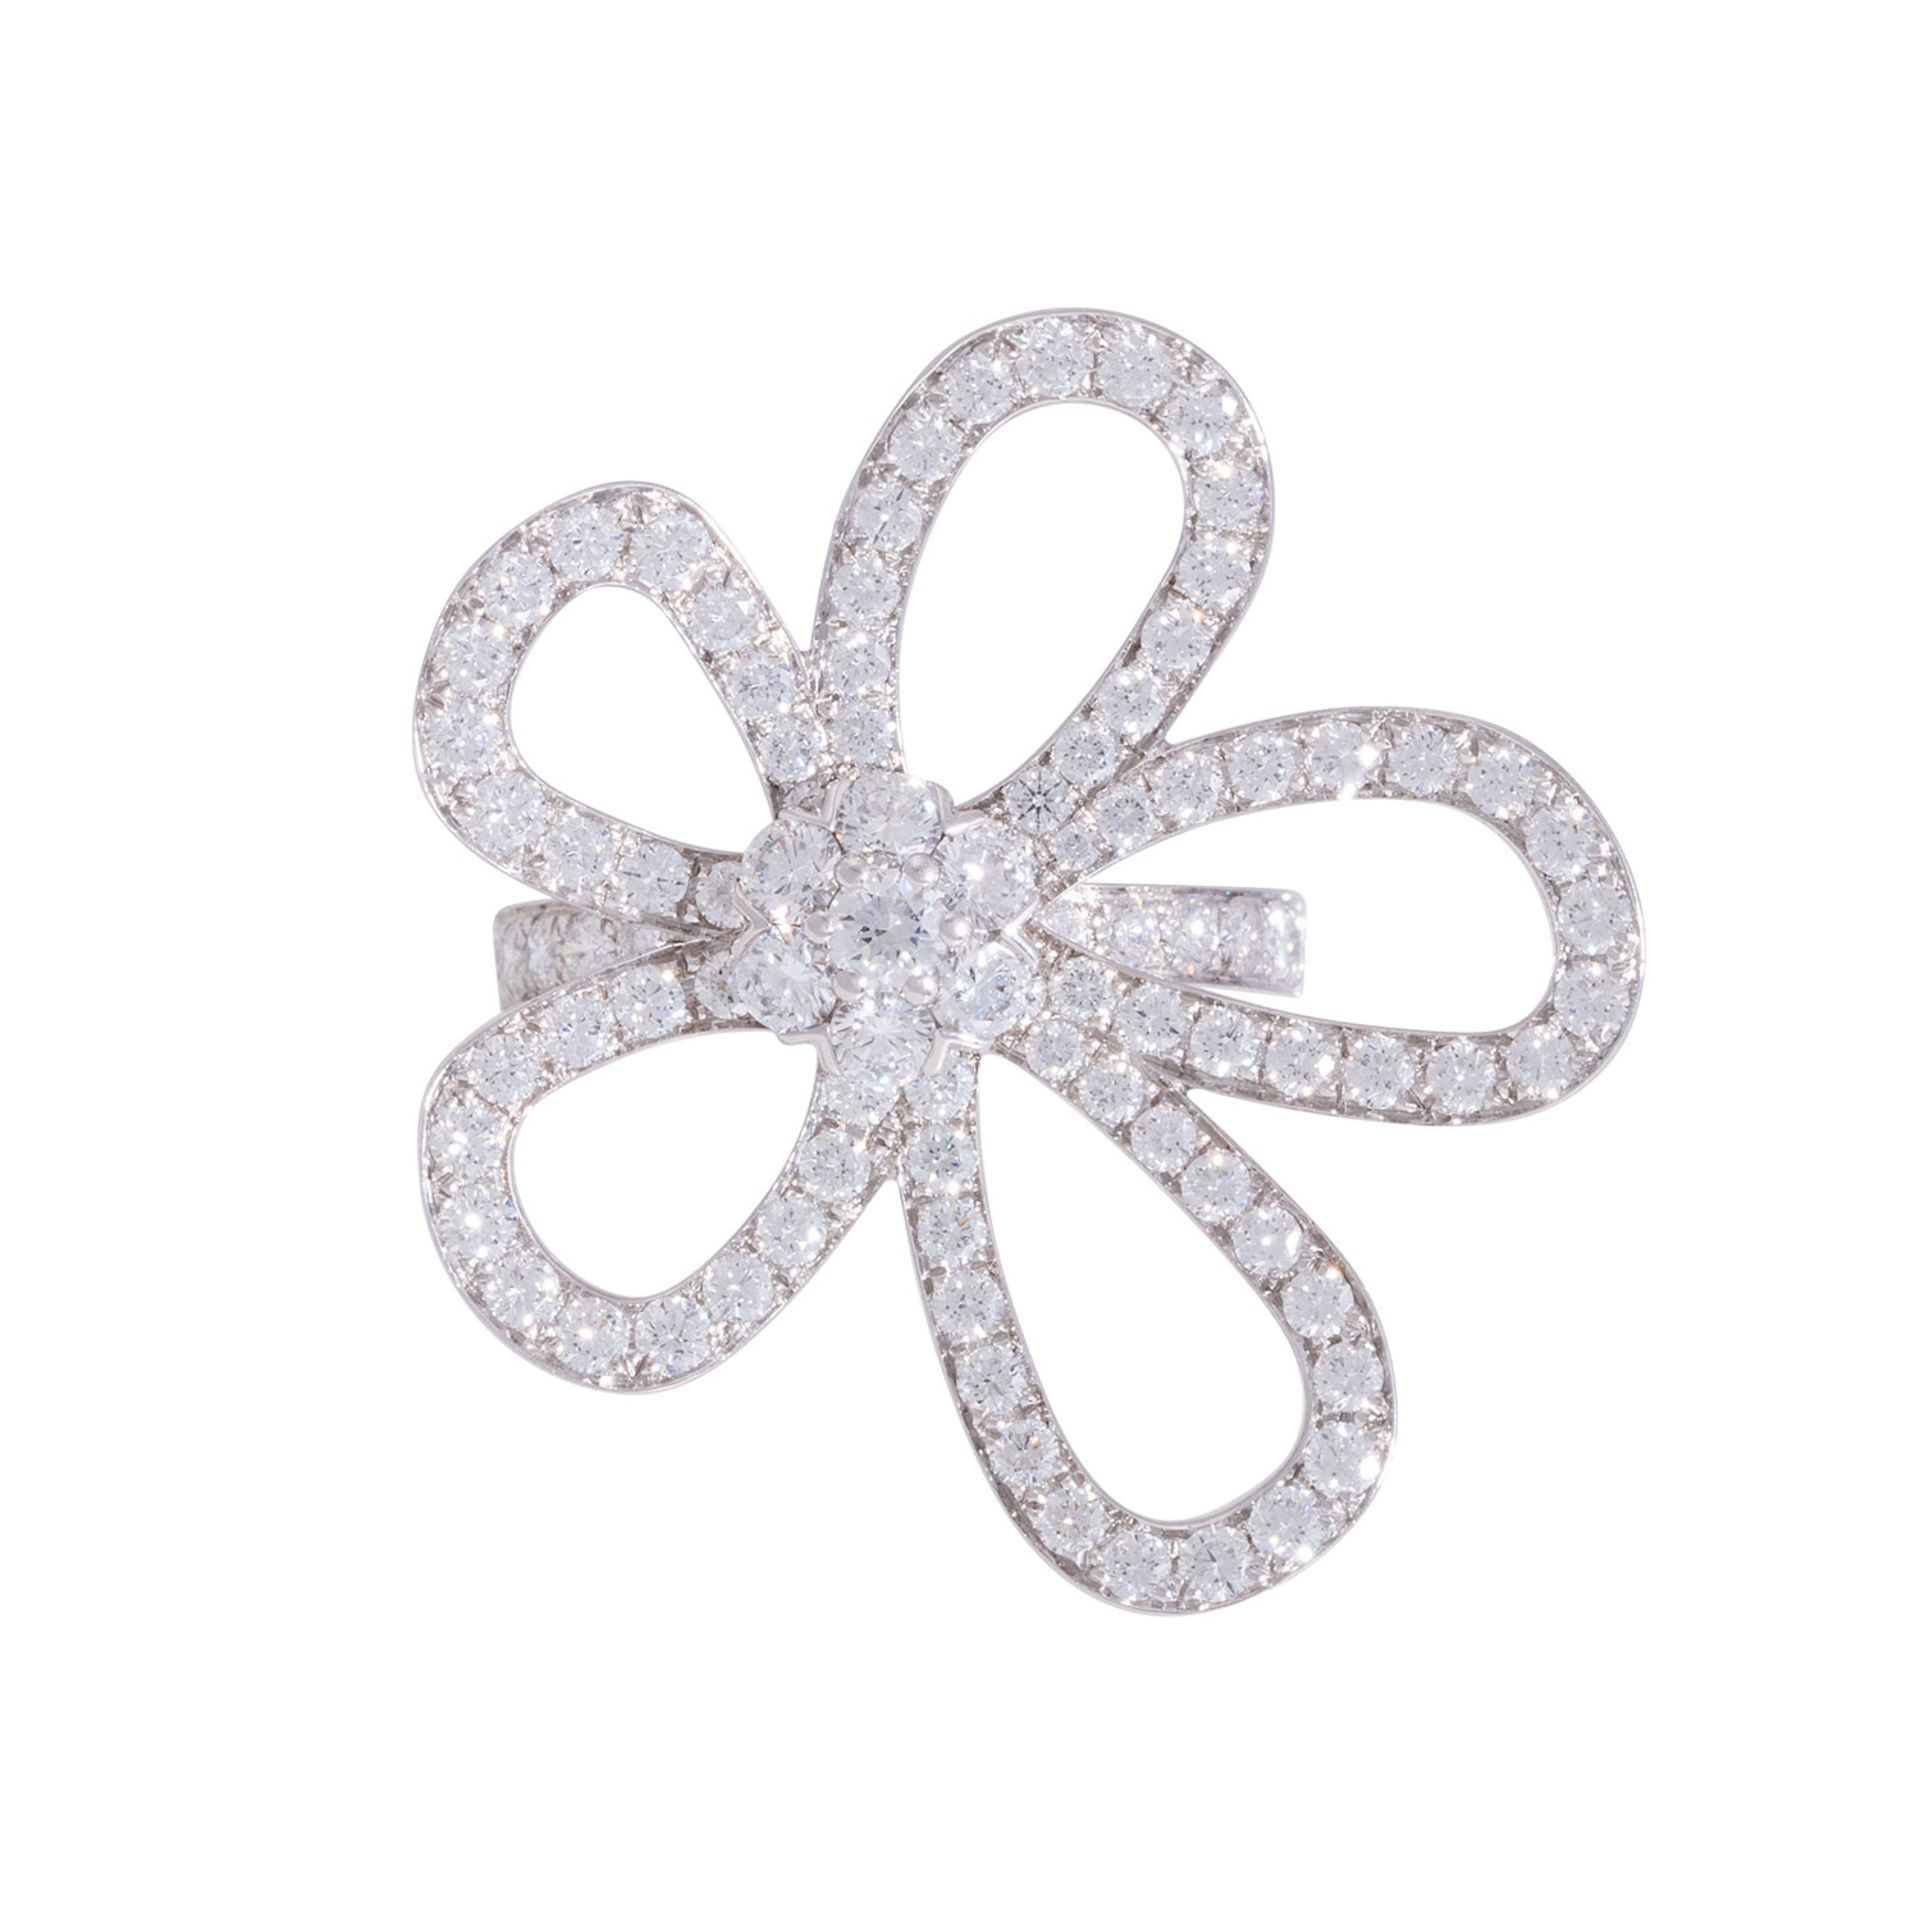 VAN CLEEF & ARPELS Ring "Flowerlace", - Image 2 of 5